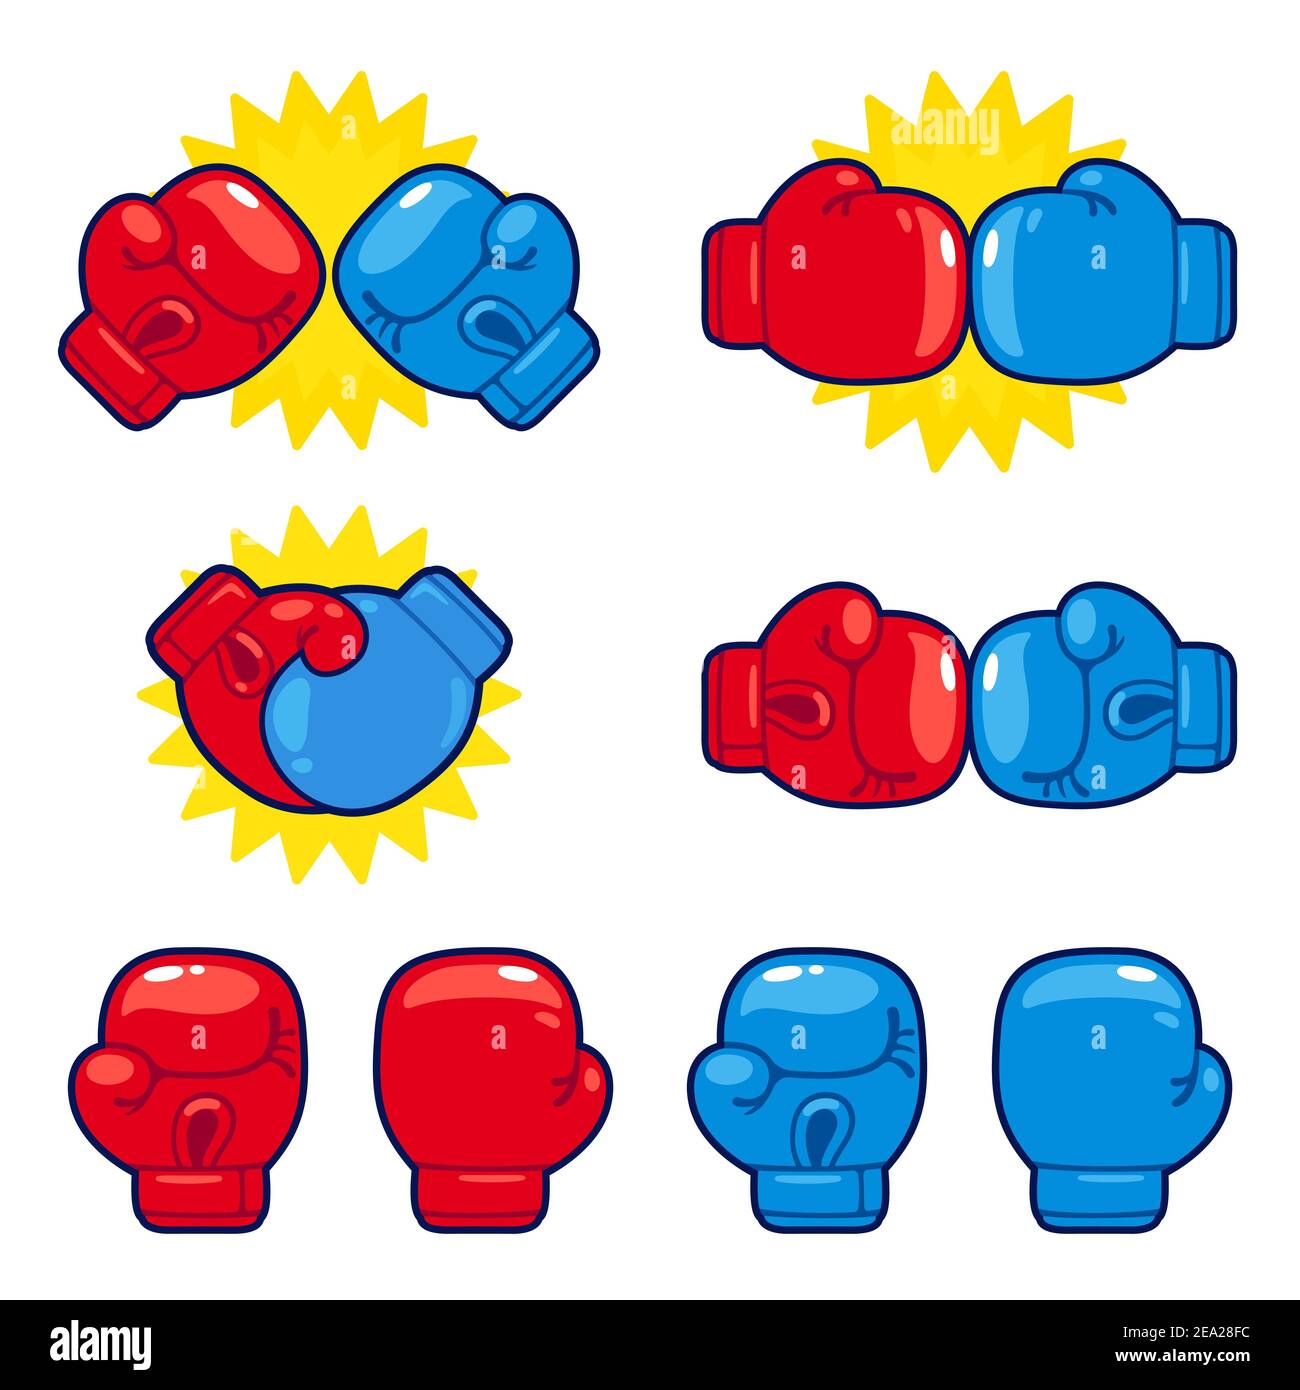 Ensemble de gants de boxe rouge et bleu de dessin animé. Adversaires du match de boxe, icônes de compétition. Illustration vectorielle isolée. Illustration de Vecteur